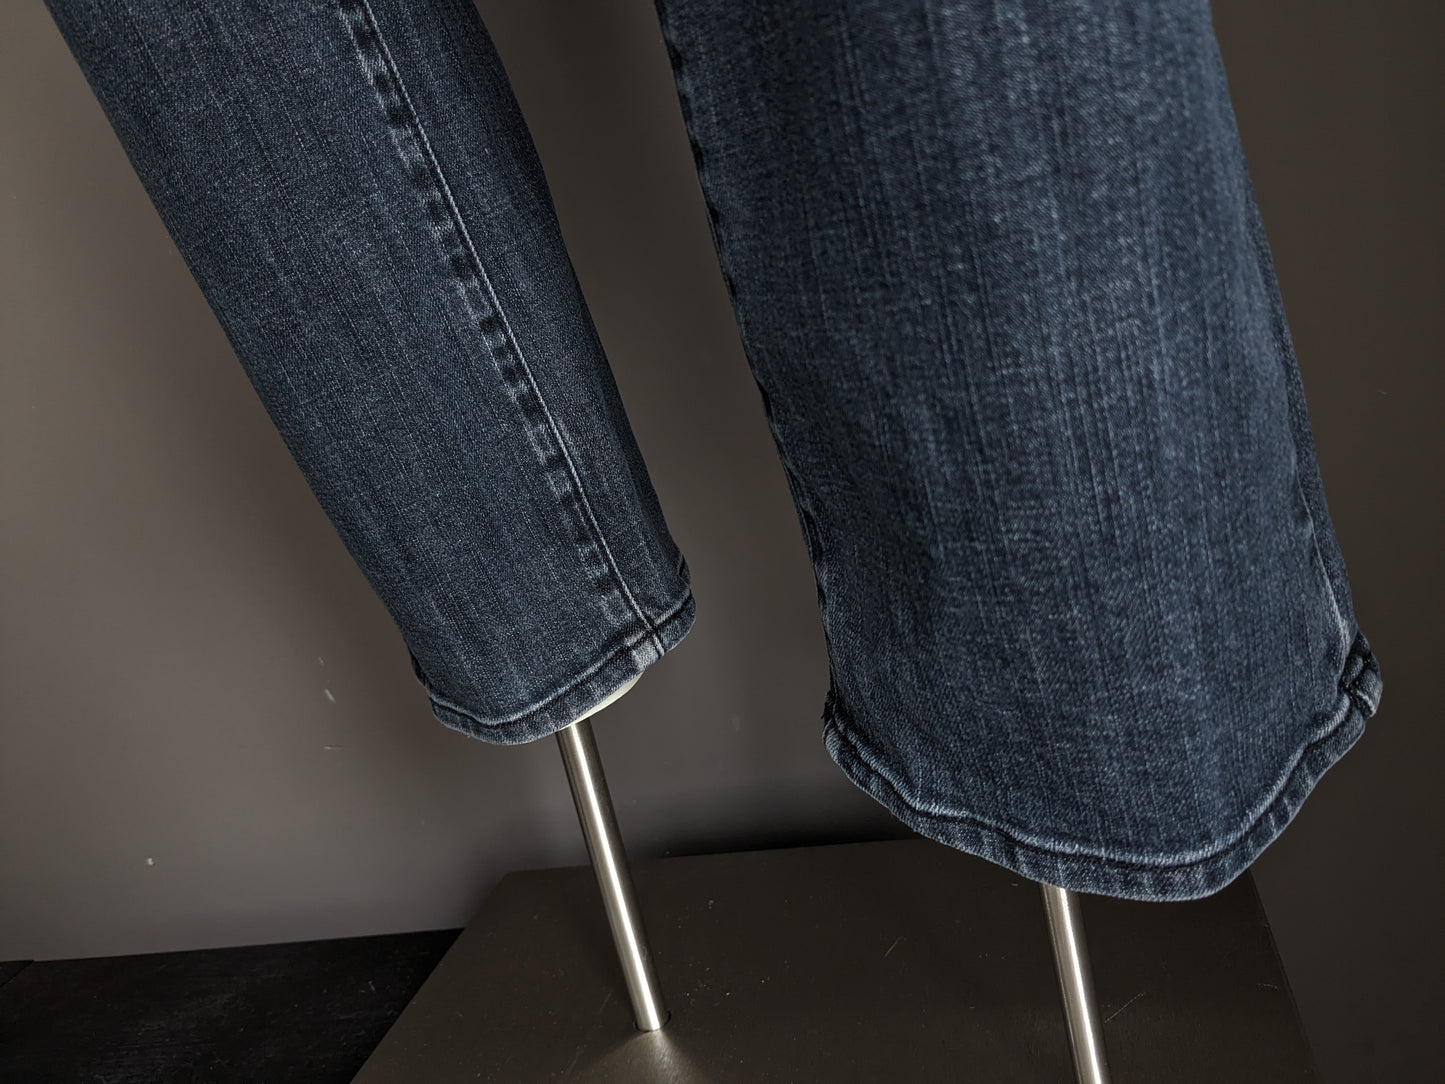 Pierre Cardin Jeans. Grigio nero colorato. Size W33 - L30. Tipo mod deauville.